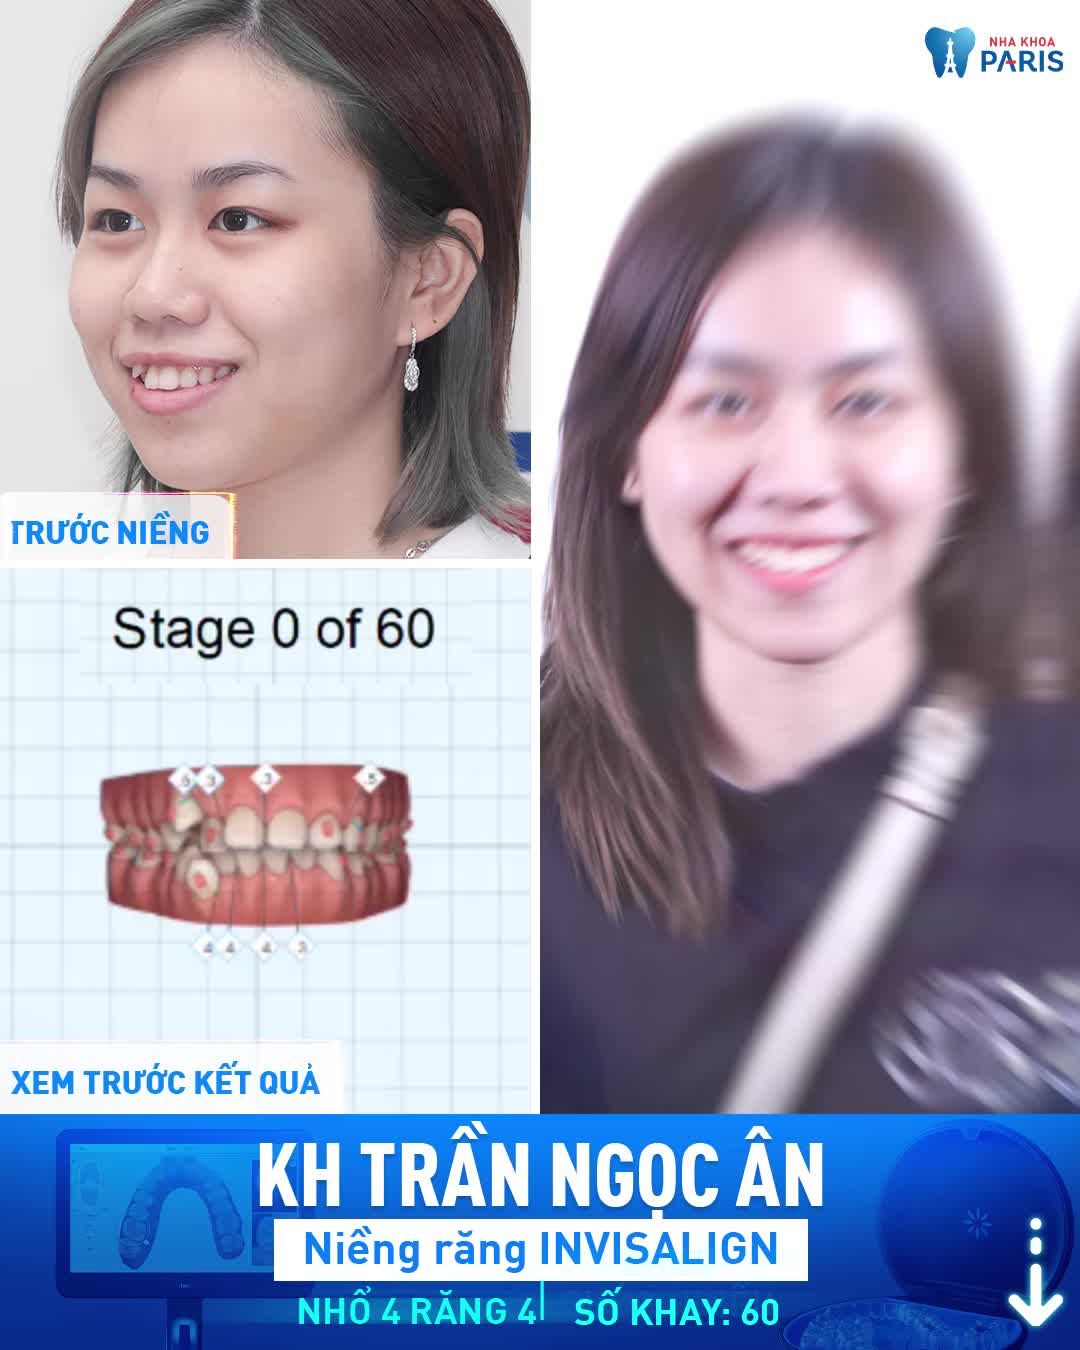 Niềng Răng “Vô Hình” Invisalign